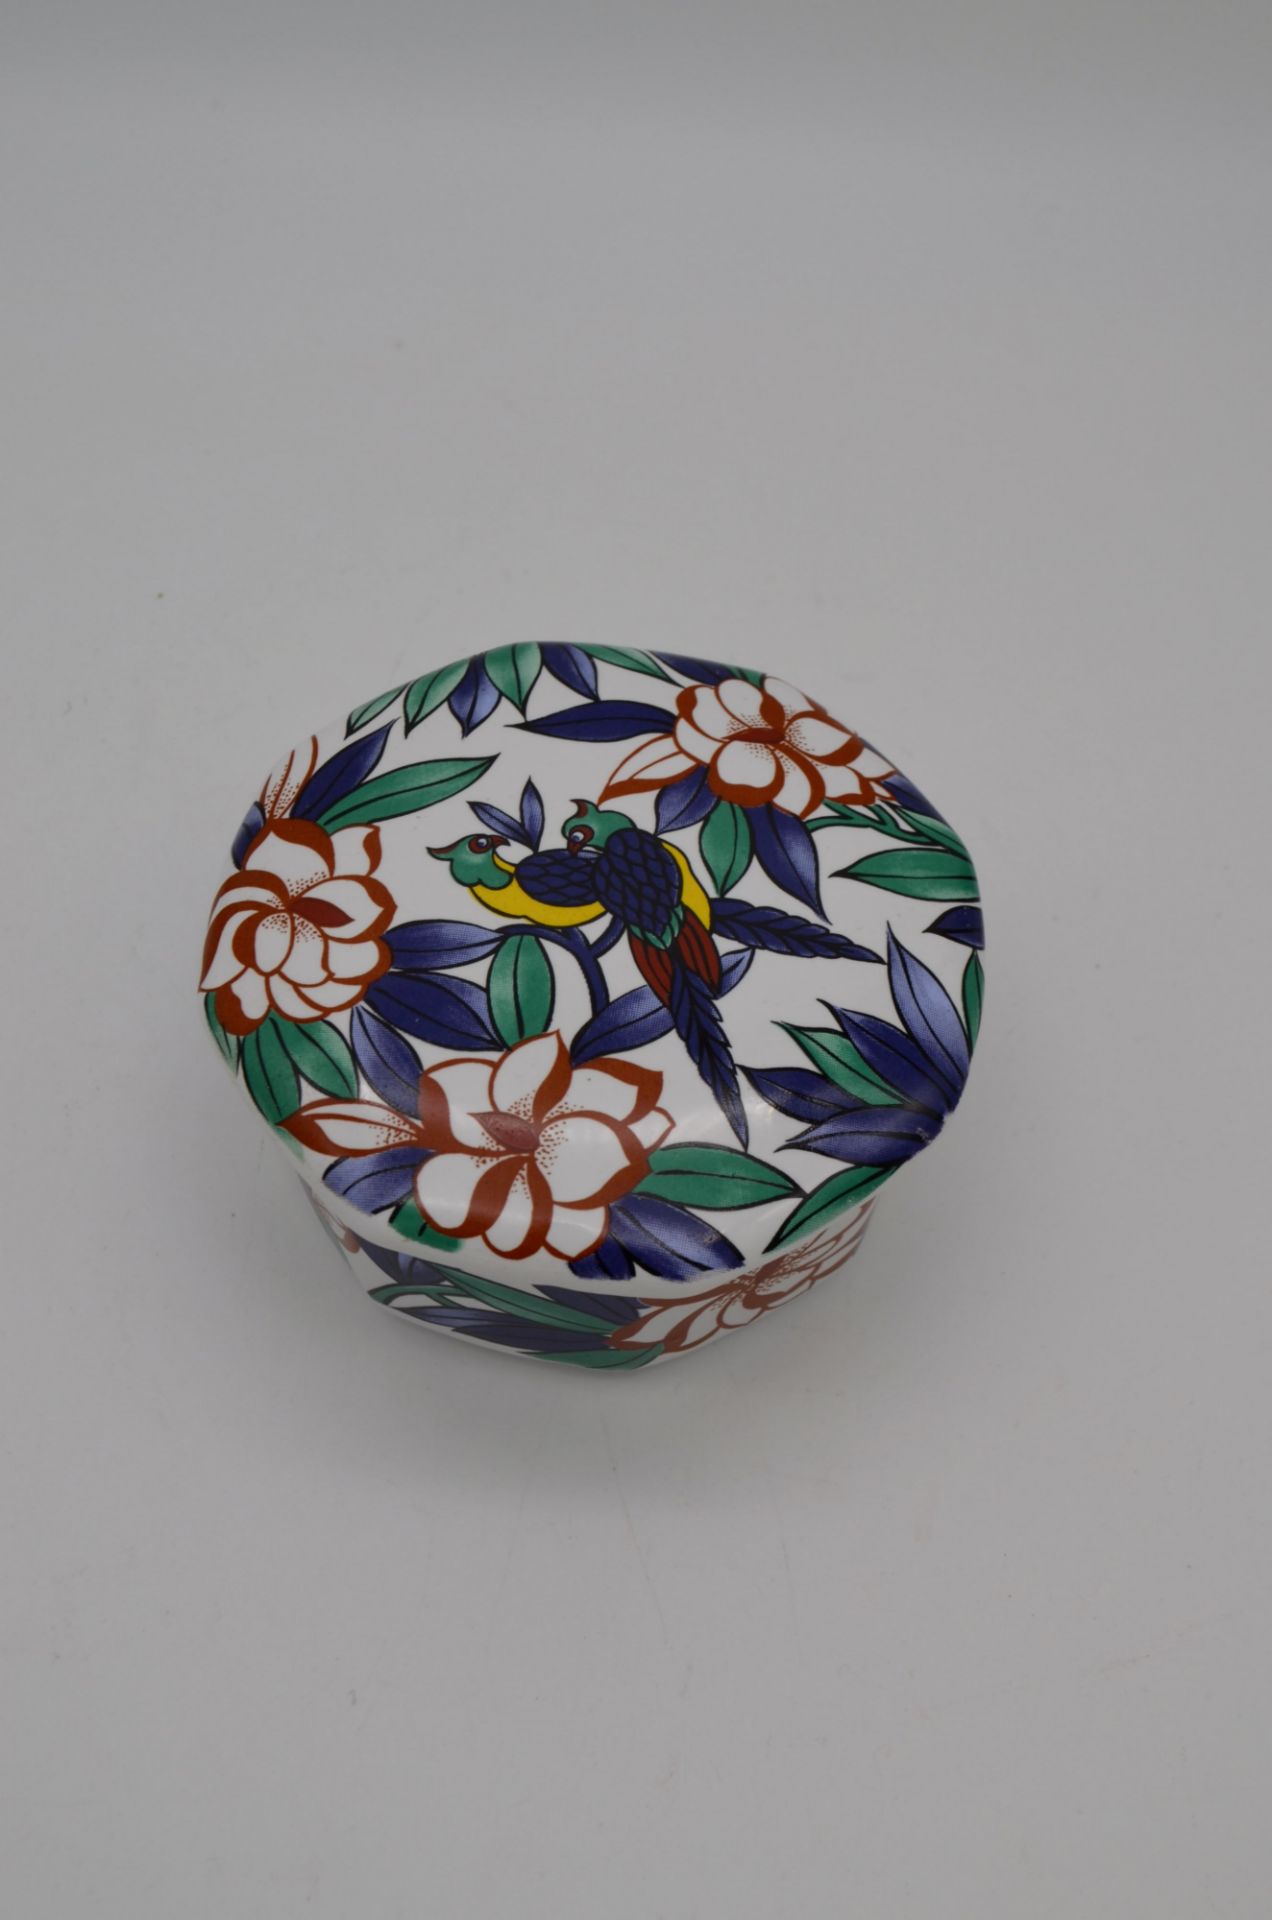 Ancienne boite bonbonnière en porcelaine à décor tropical - Image 2 of 3